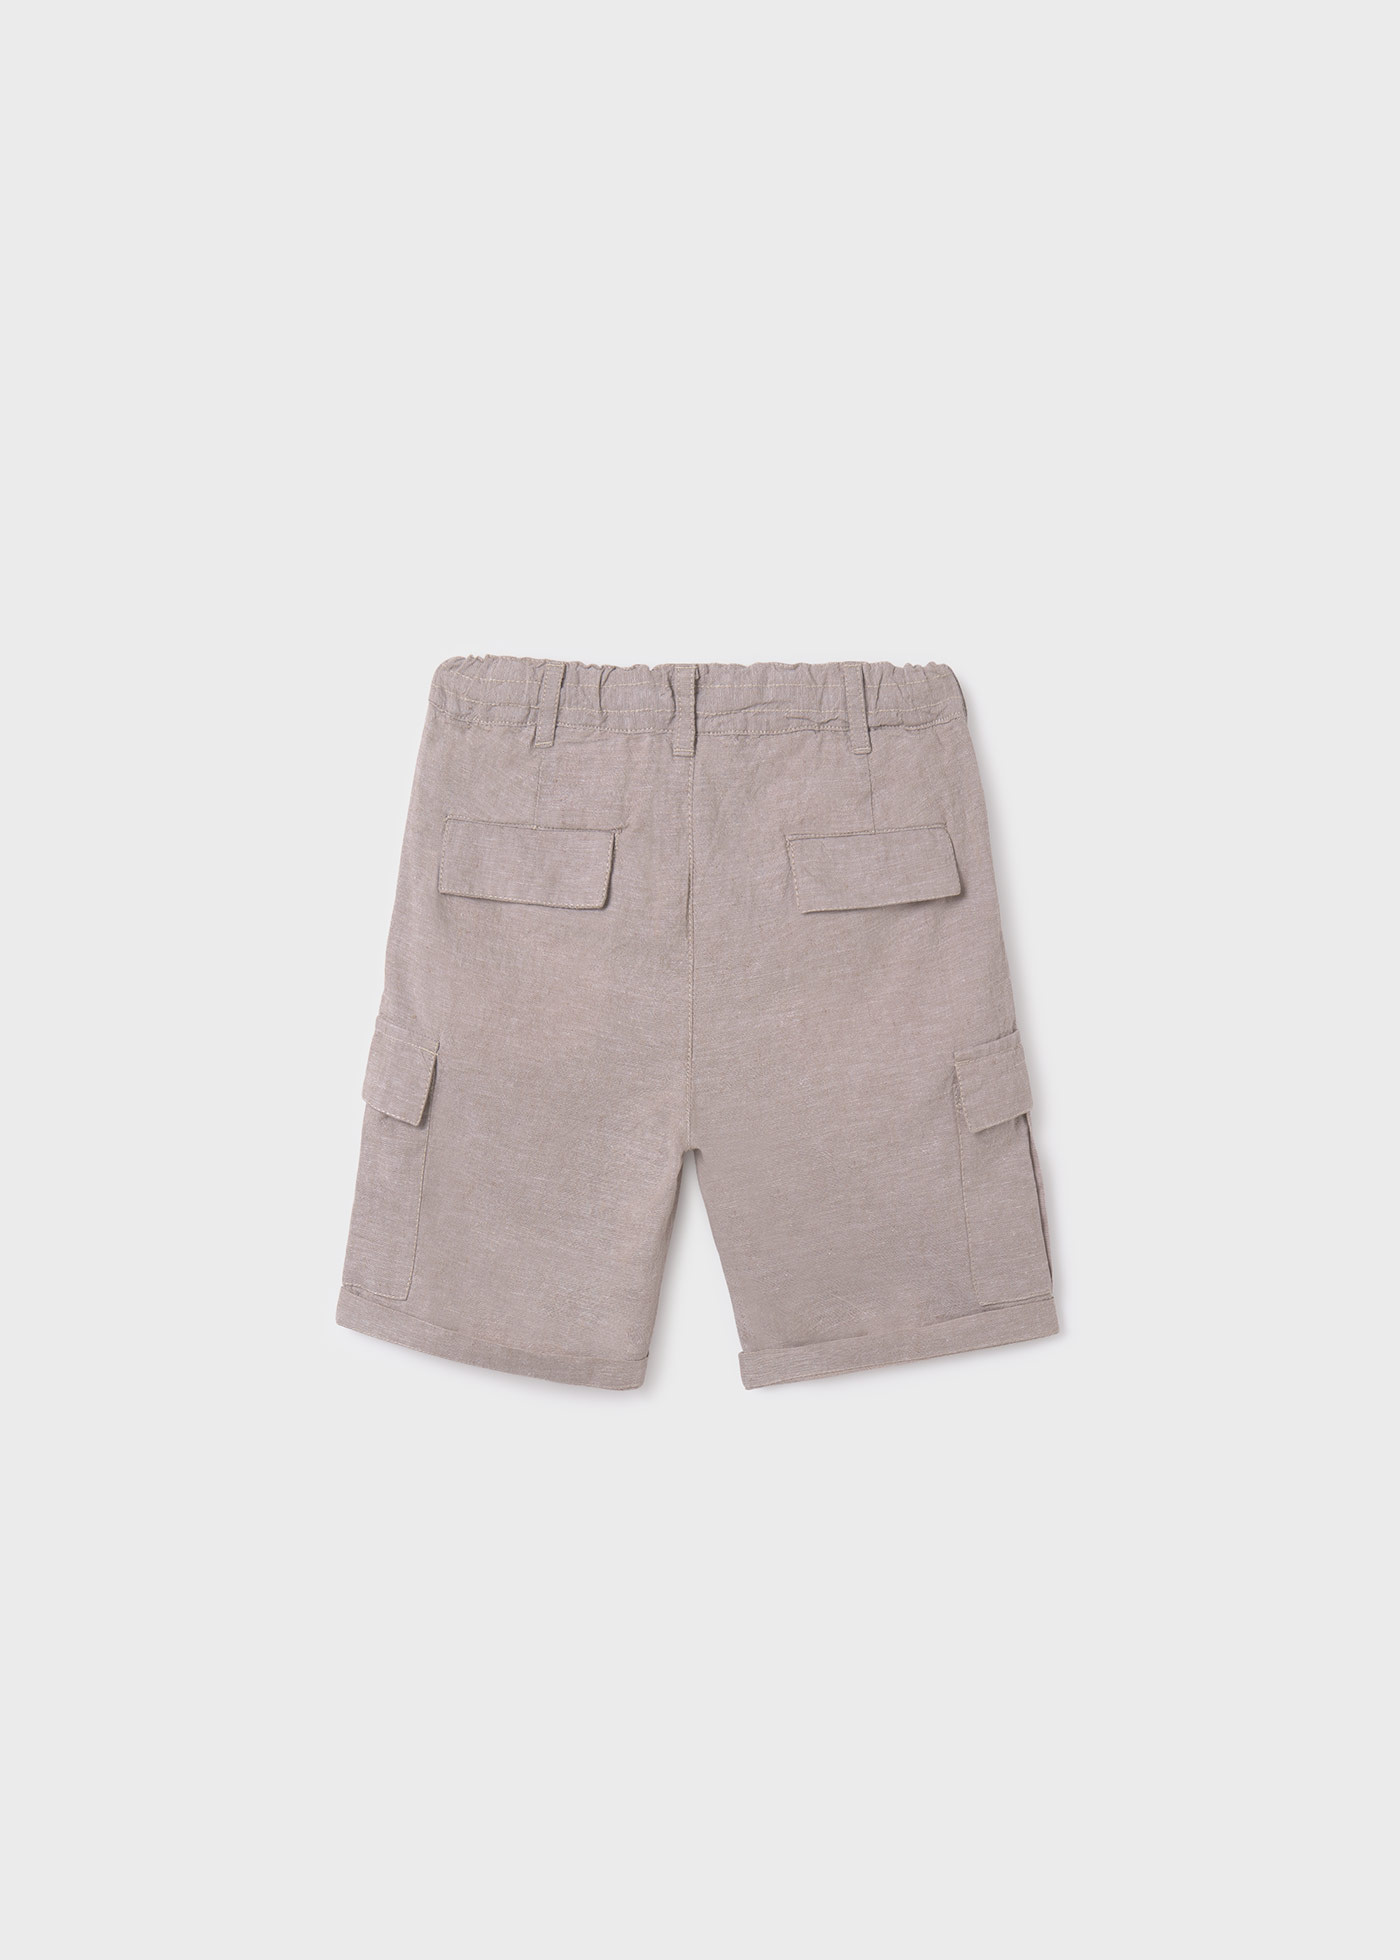 Boys cargo linen shorts